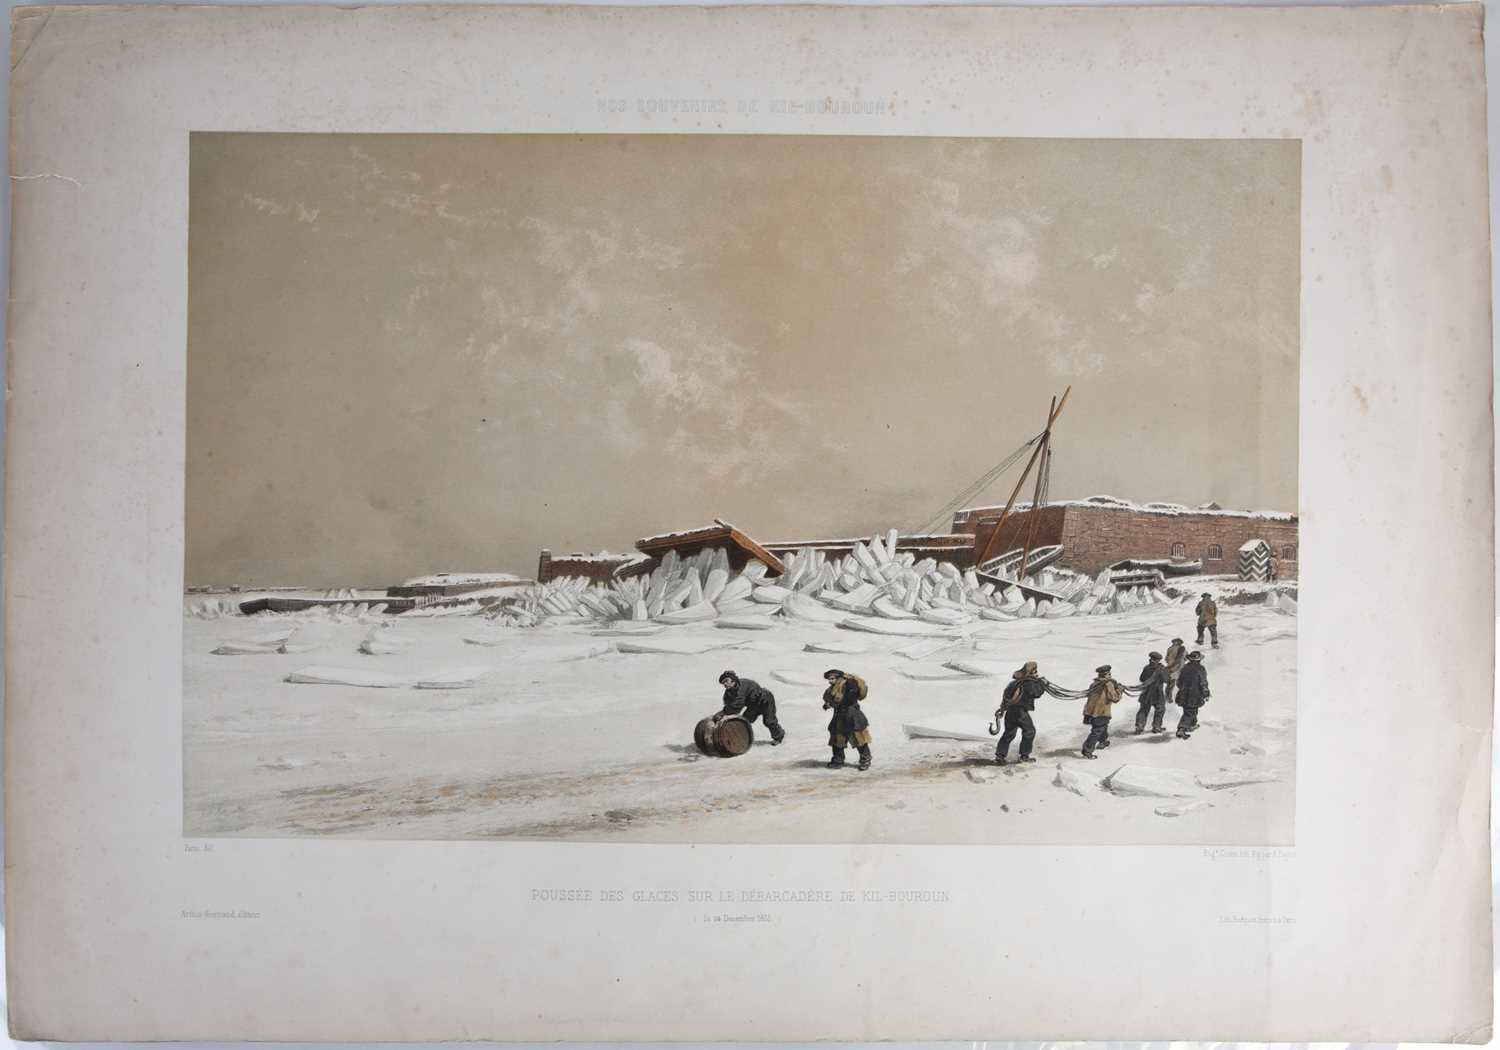 After Adolphe Bayot, Nos Souvenirs de Kil - Bouroun, Effet de la Debacle du 28 Janvier 1856, sur